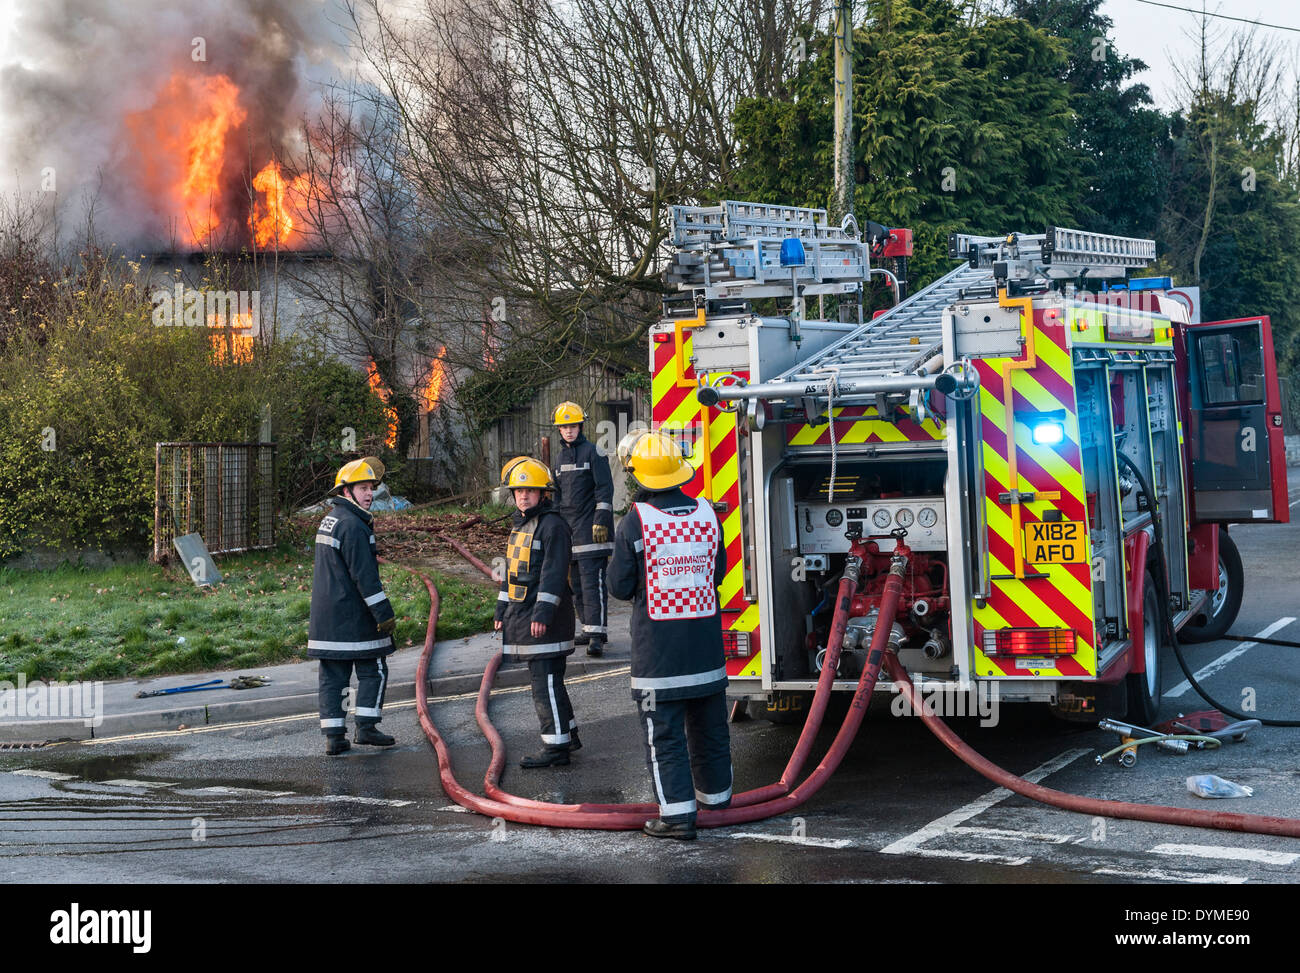 Les pompiers du service incendie gallois assister à un incendie dans une maison abandonnée à Presteigne, Pays de Galles, Royaume-Uni. Banque D'Images